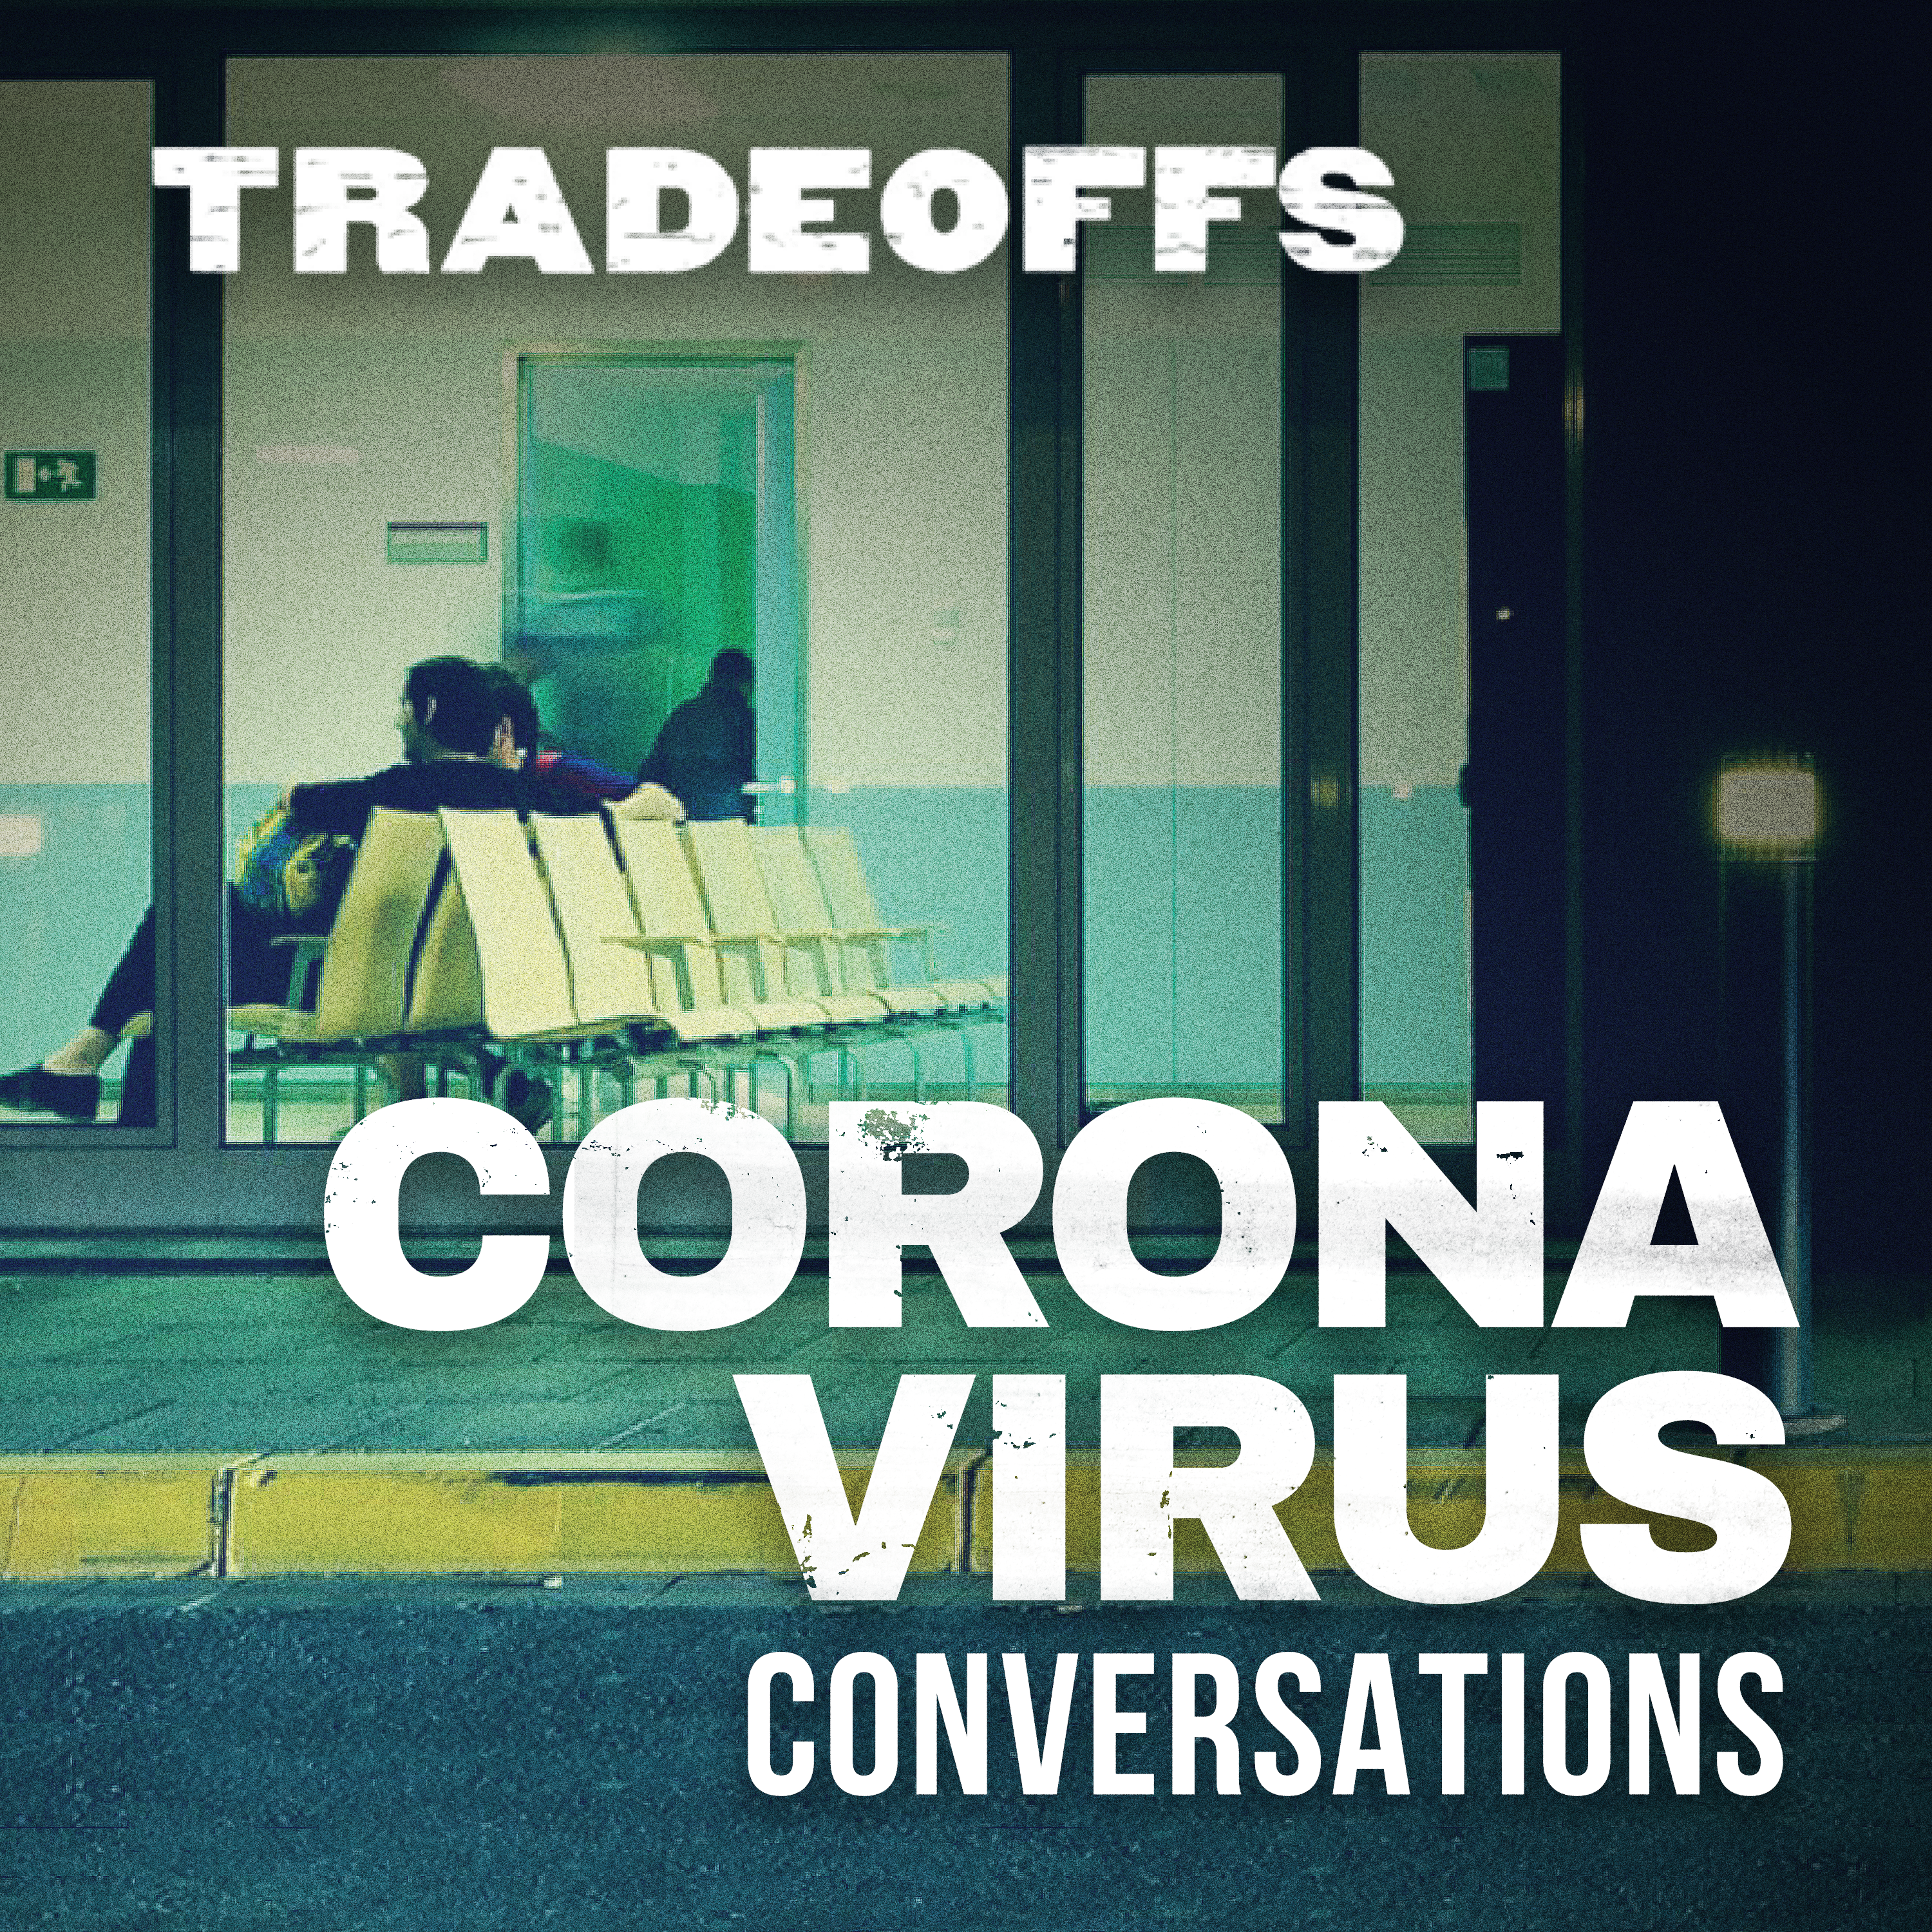 Coronavirus Conversations: Mayra Jimenez